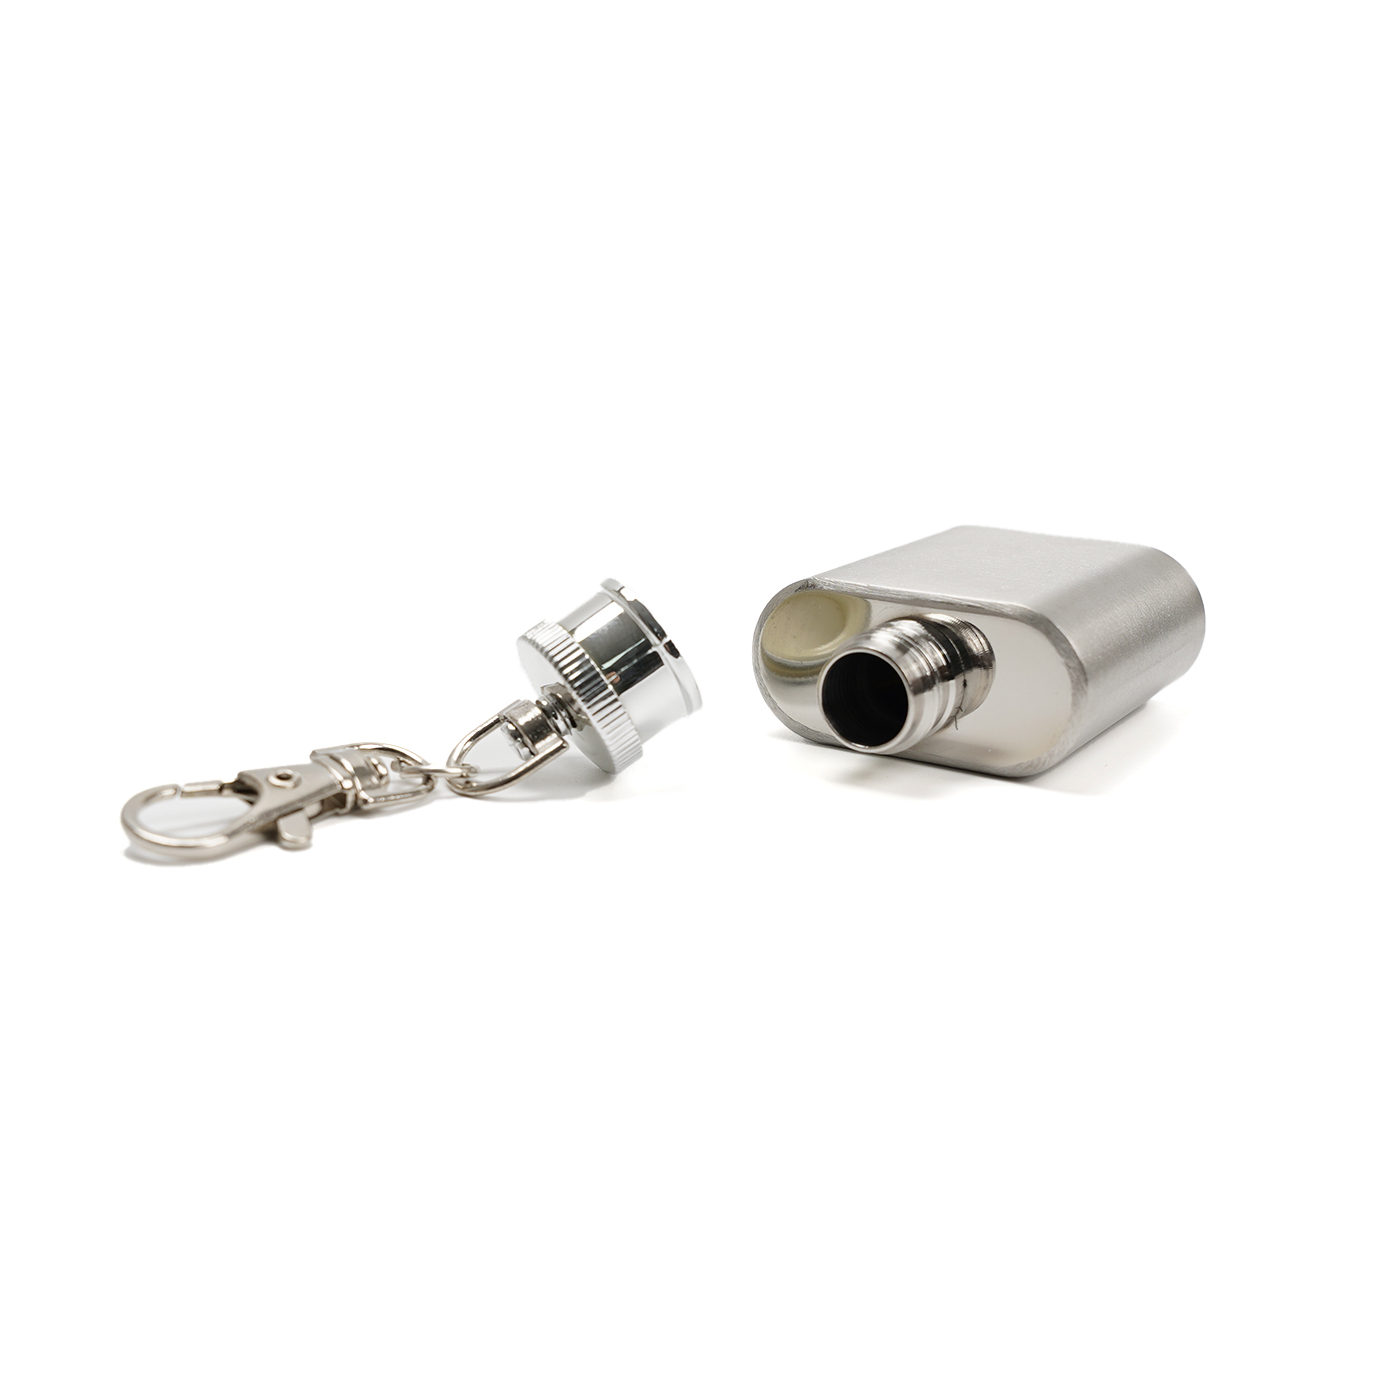 1 oz. Custom Stainless Steel Flask Keychain2